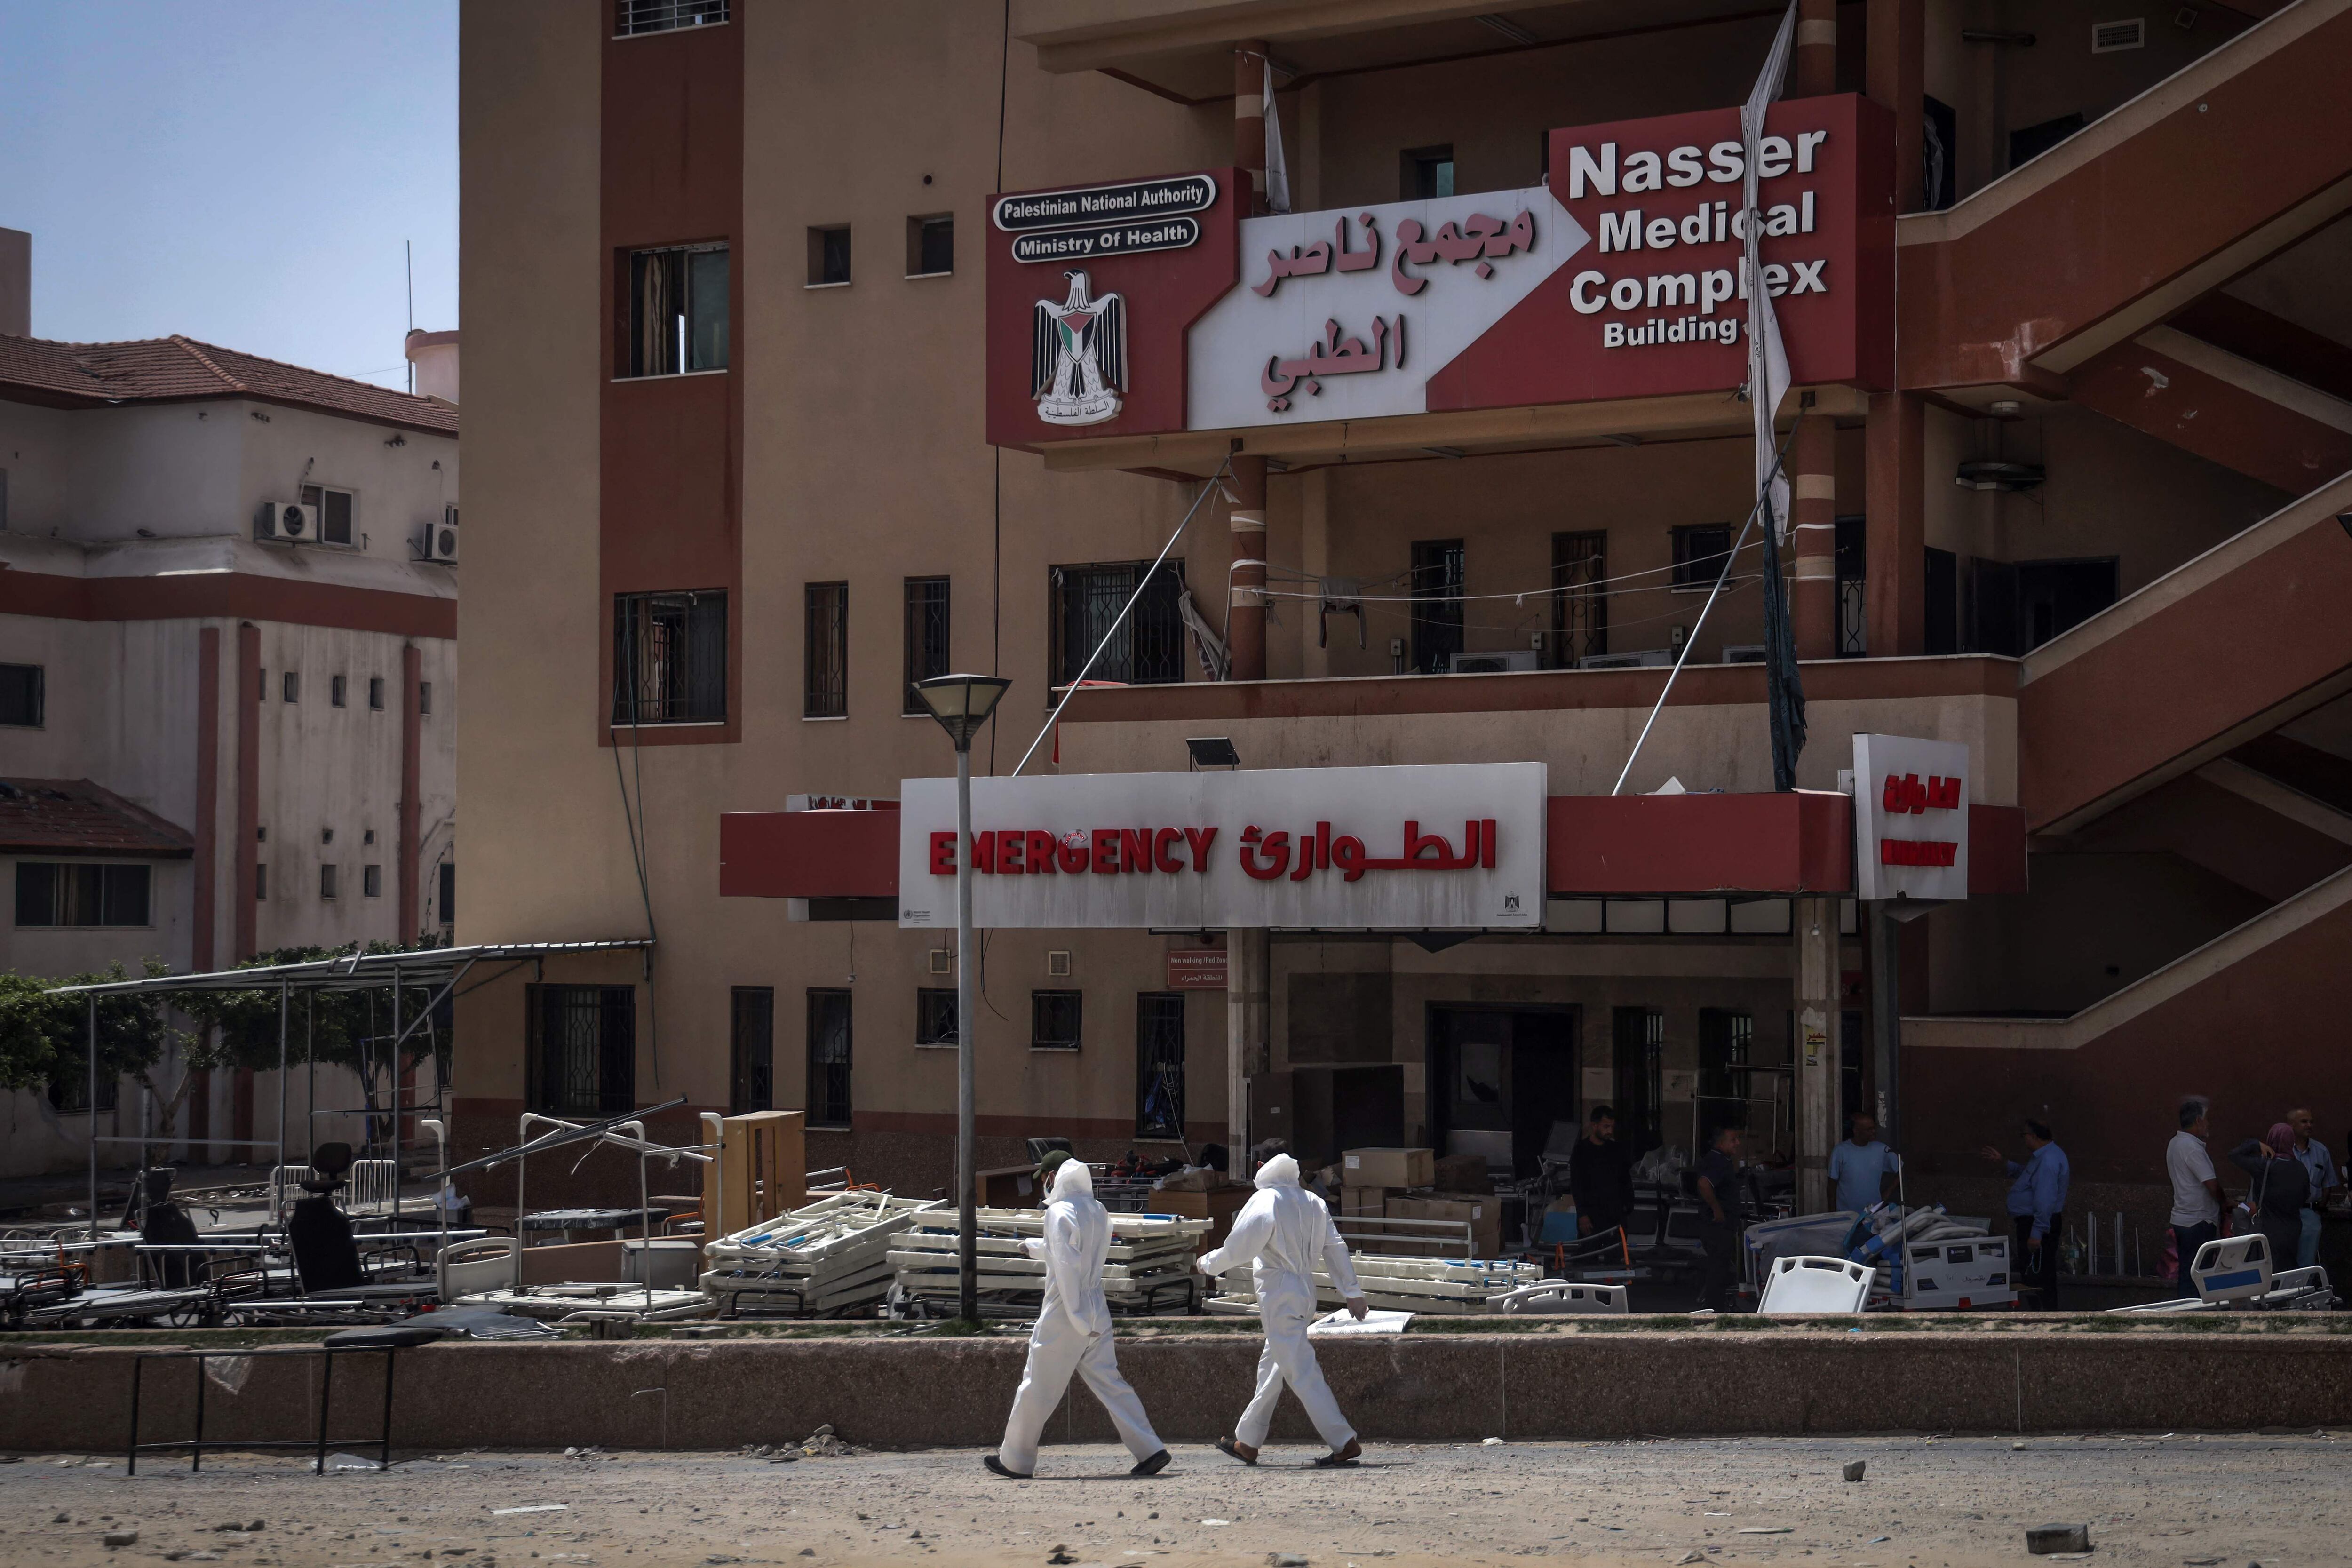 Los médicos caminan frente a la sala de emergencias del Hospital Nasser donde se descubrieron los cadáveres, en Khan Yunis, en el sur de la Franja de Gaza, en medio del conflicto en curso entre Israel y el grupo militante palestino Hamás. (Foto de AFP)